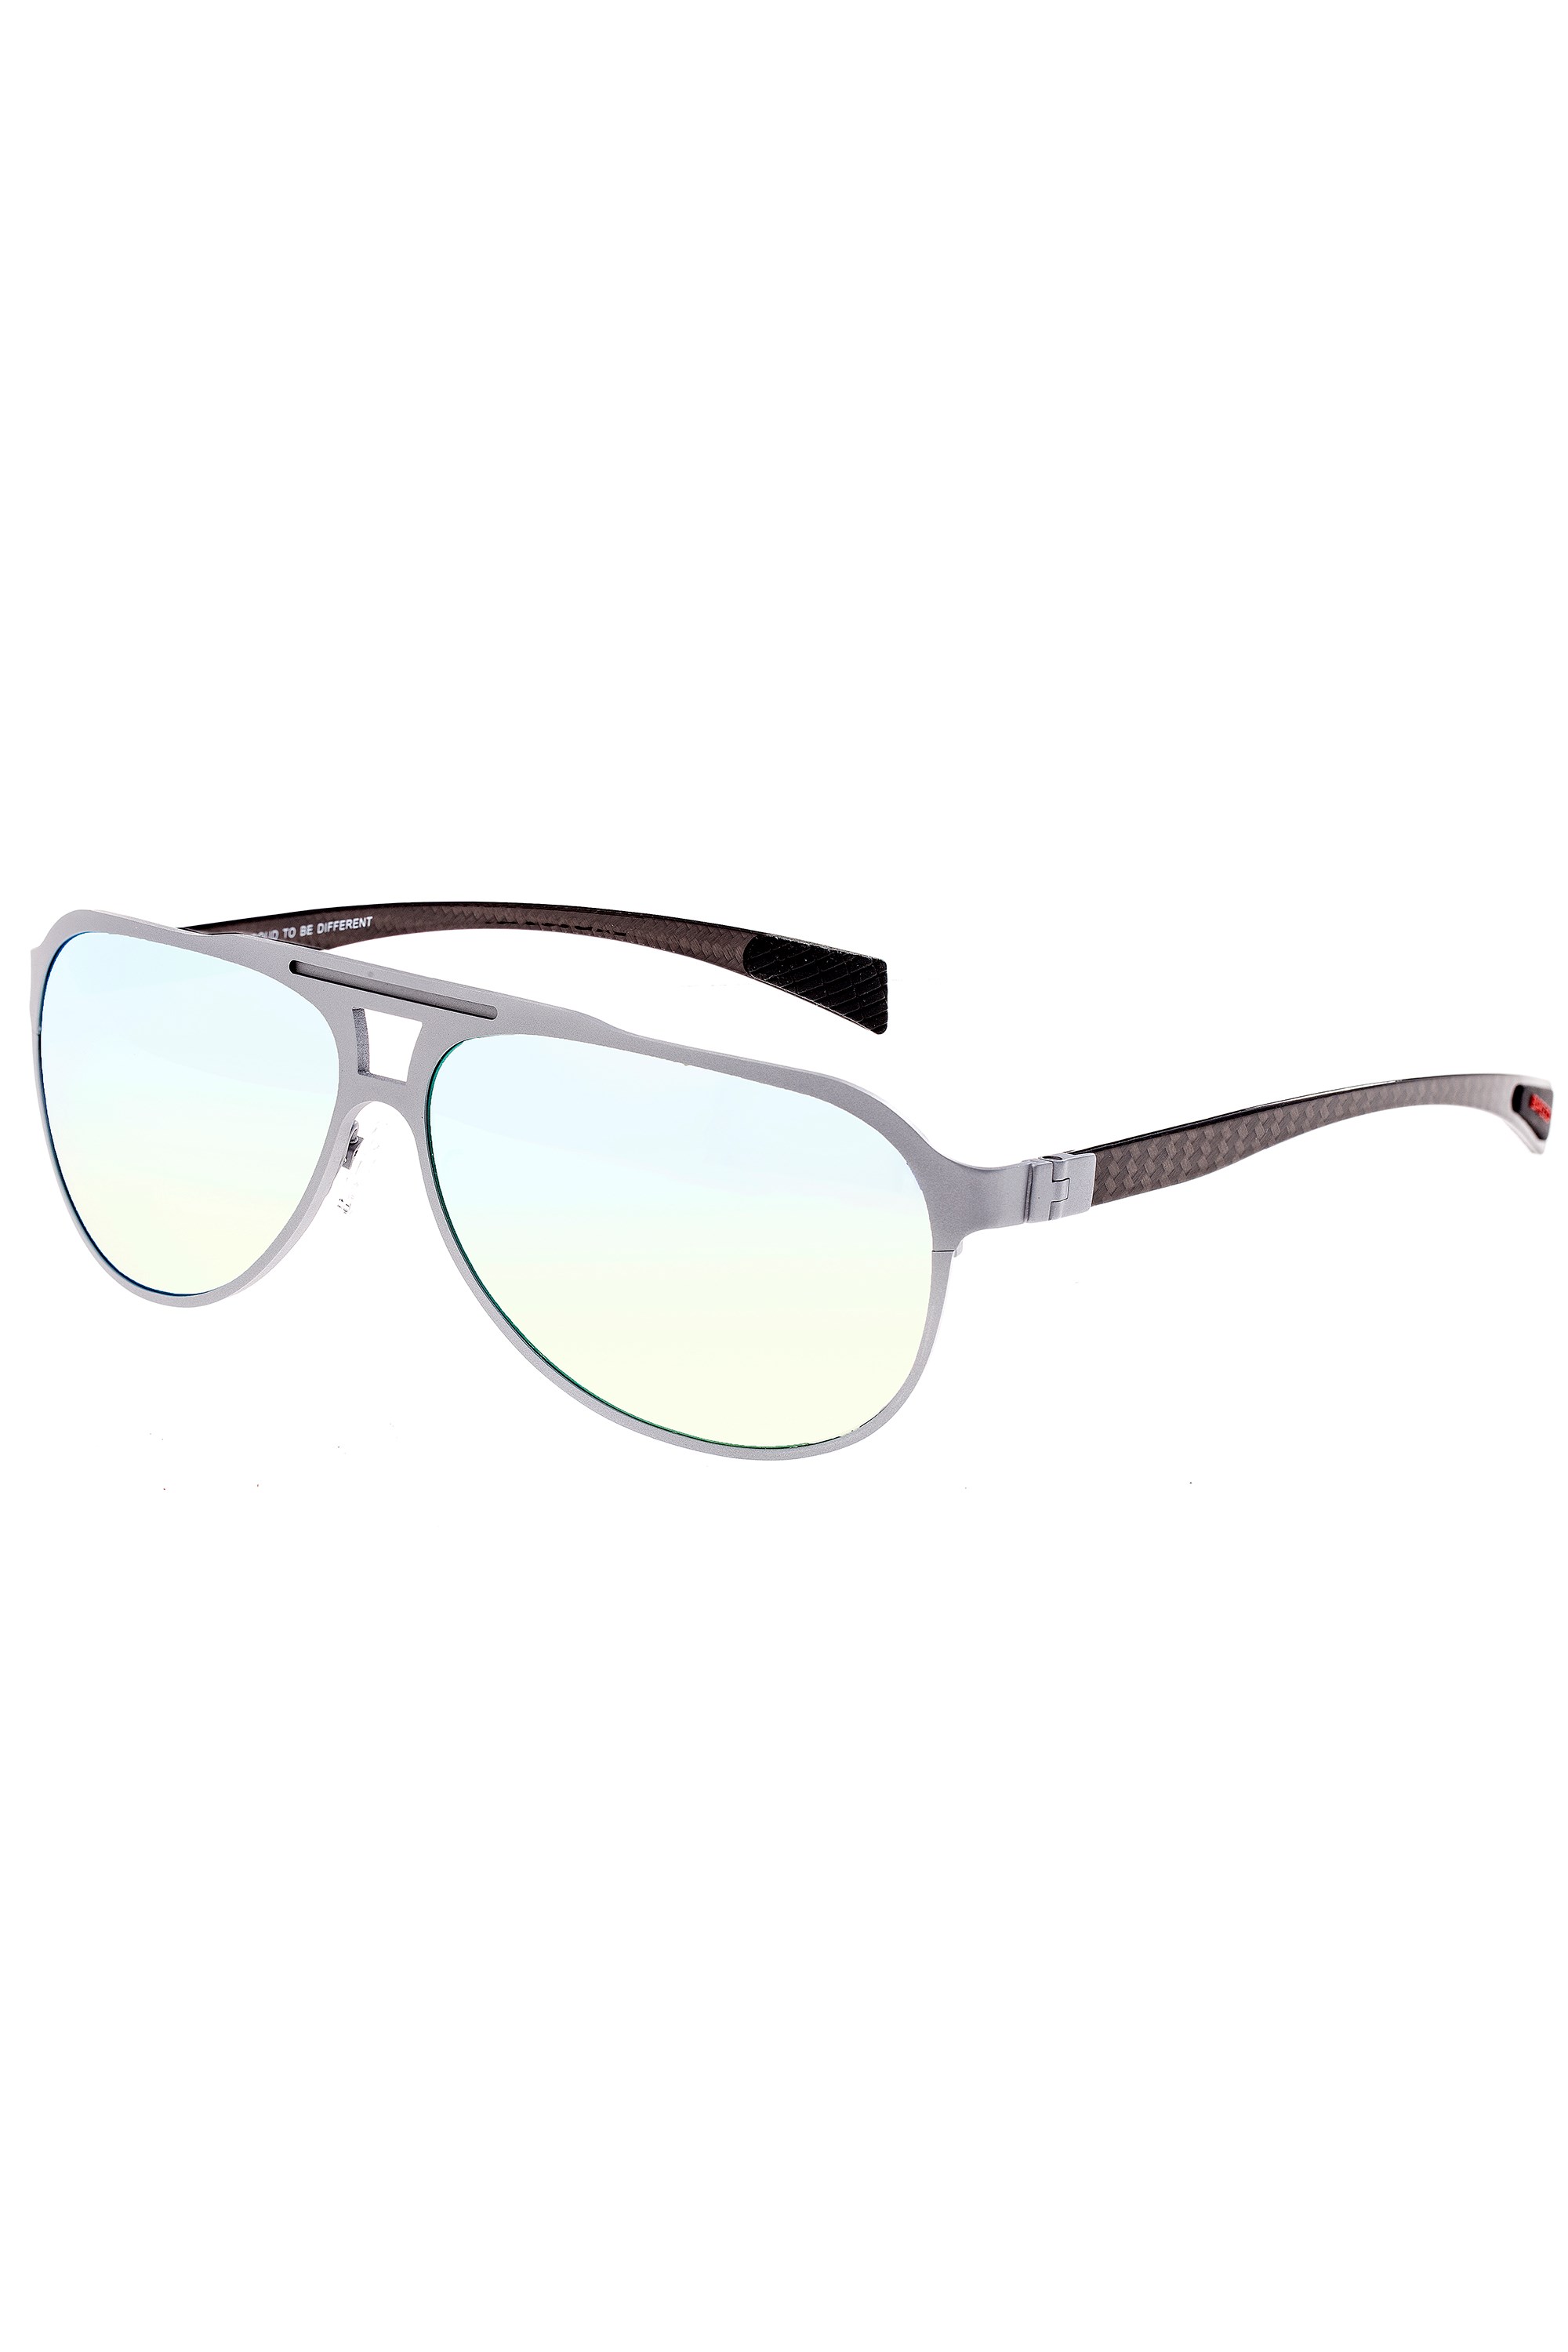 Apollo Polarized Sunglasses -